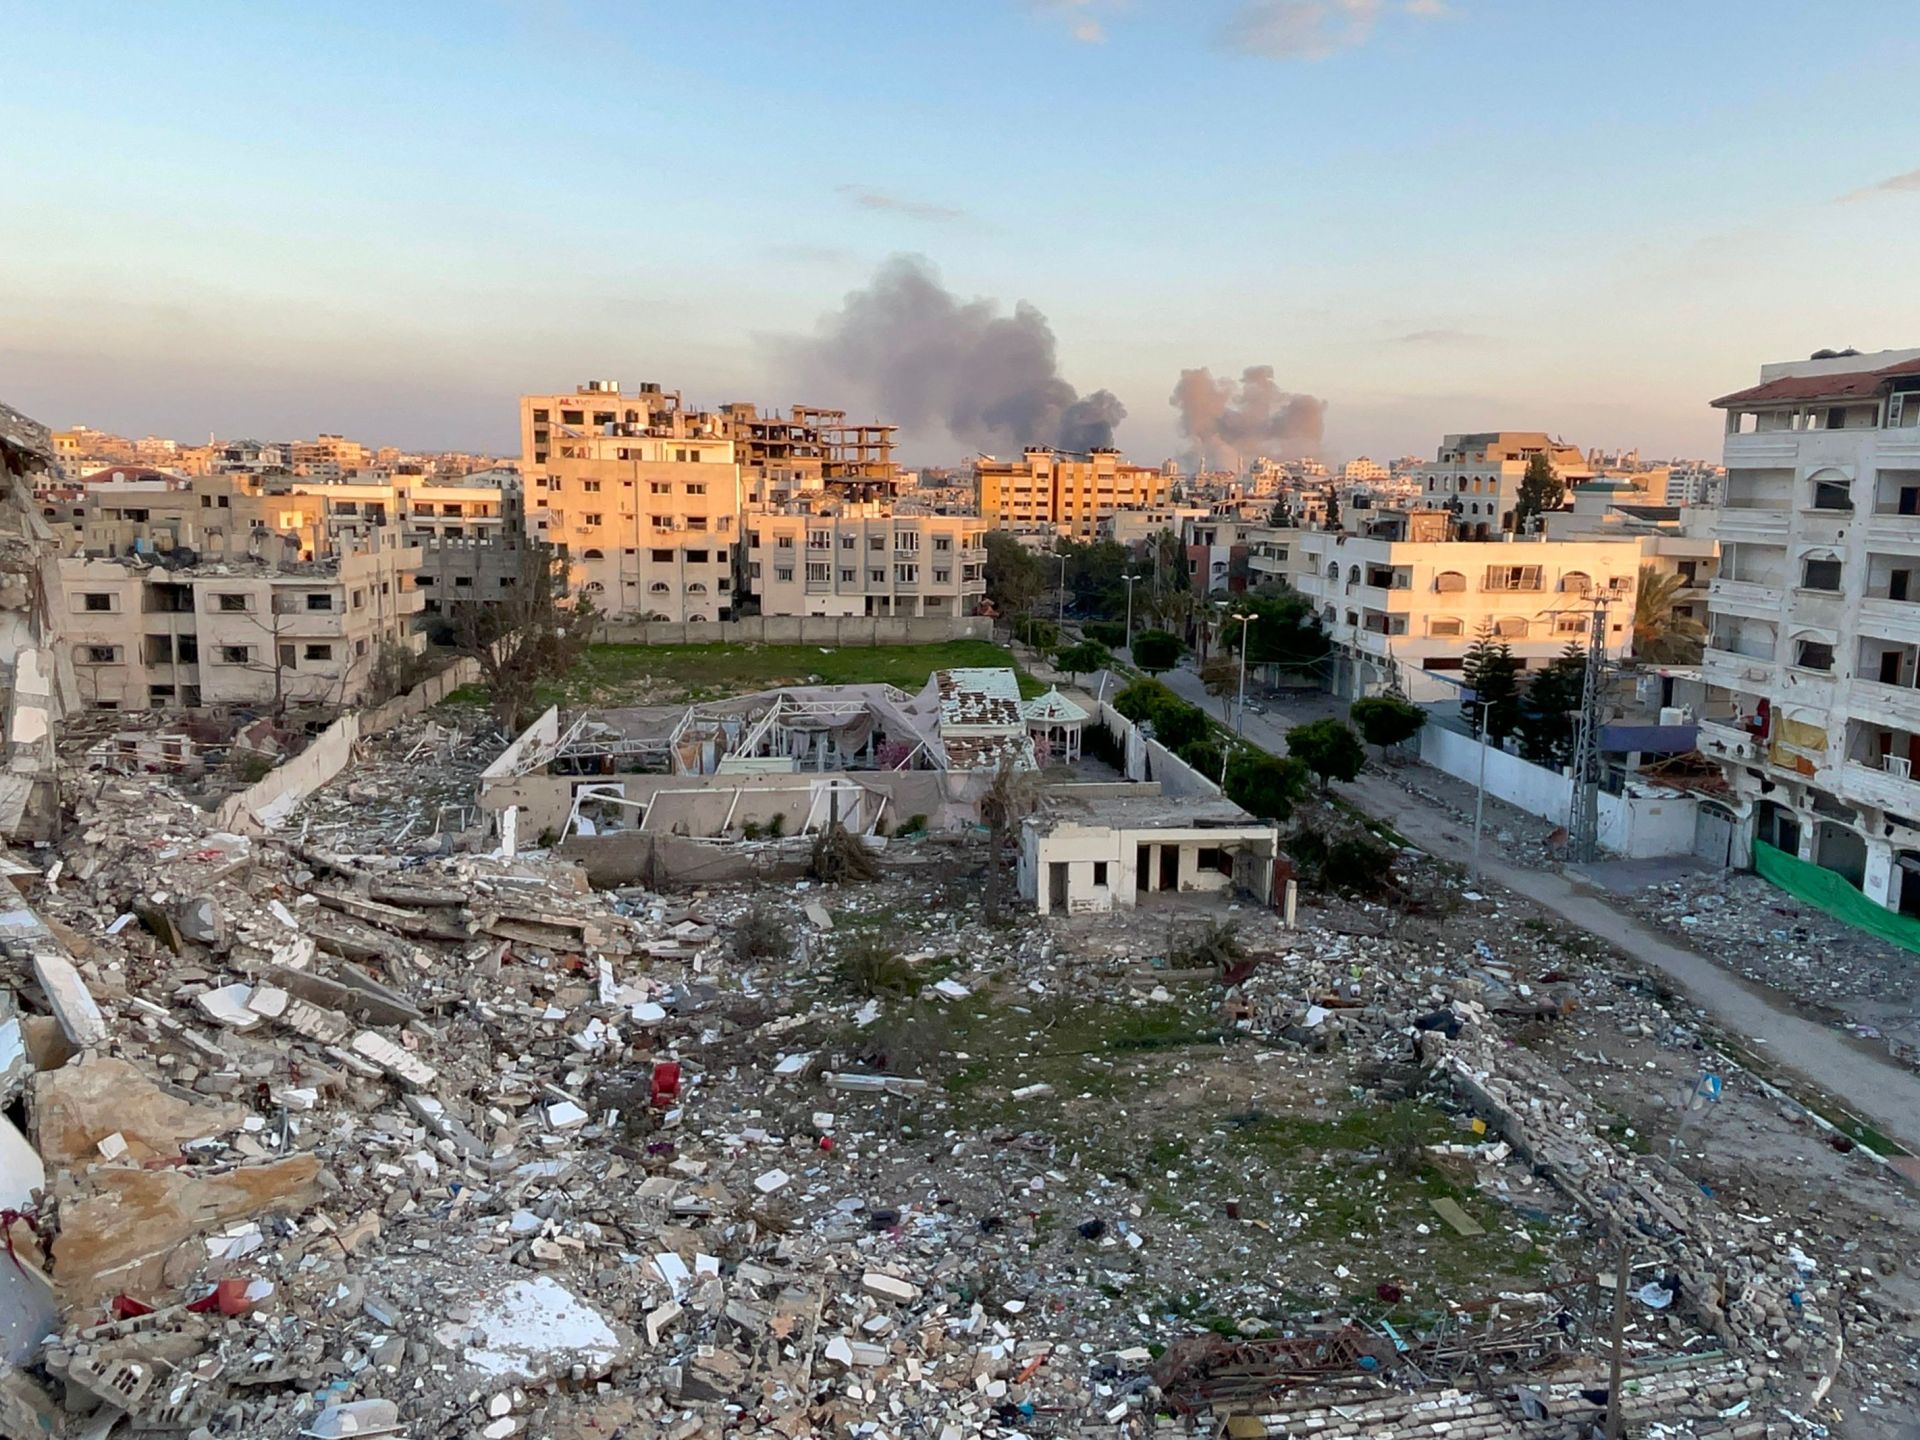 وول ستريت جورنال: الجيش الإسرائيلي يعمل على شق طريق يقسم قطاع غزة | أخبار – البوكس نيوز